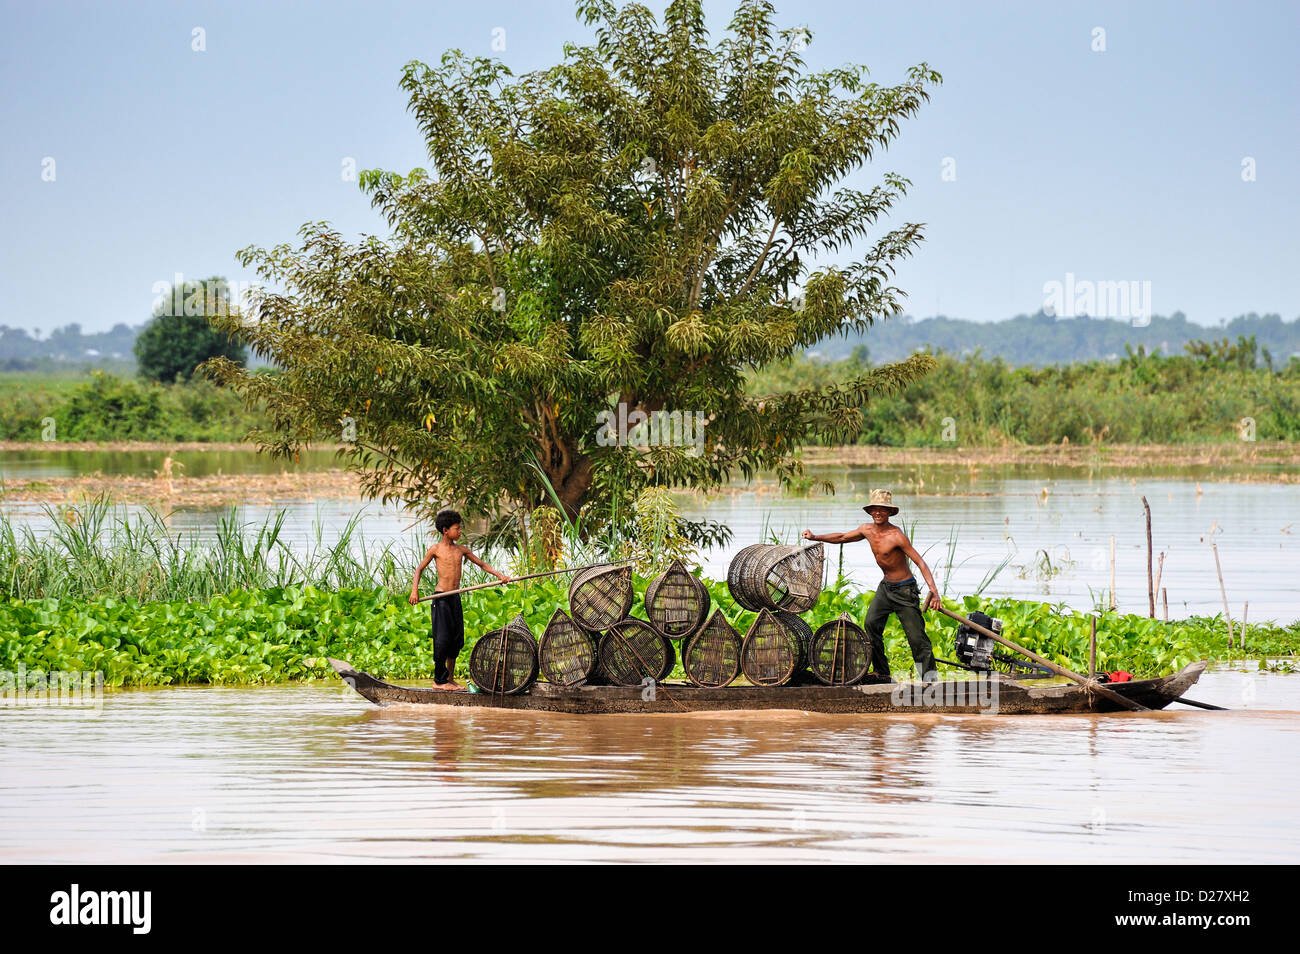 Mékong, Cambodge - man and boy transportant des pièges de pêche / baskets Banque D'Images